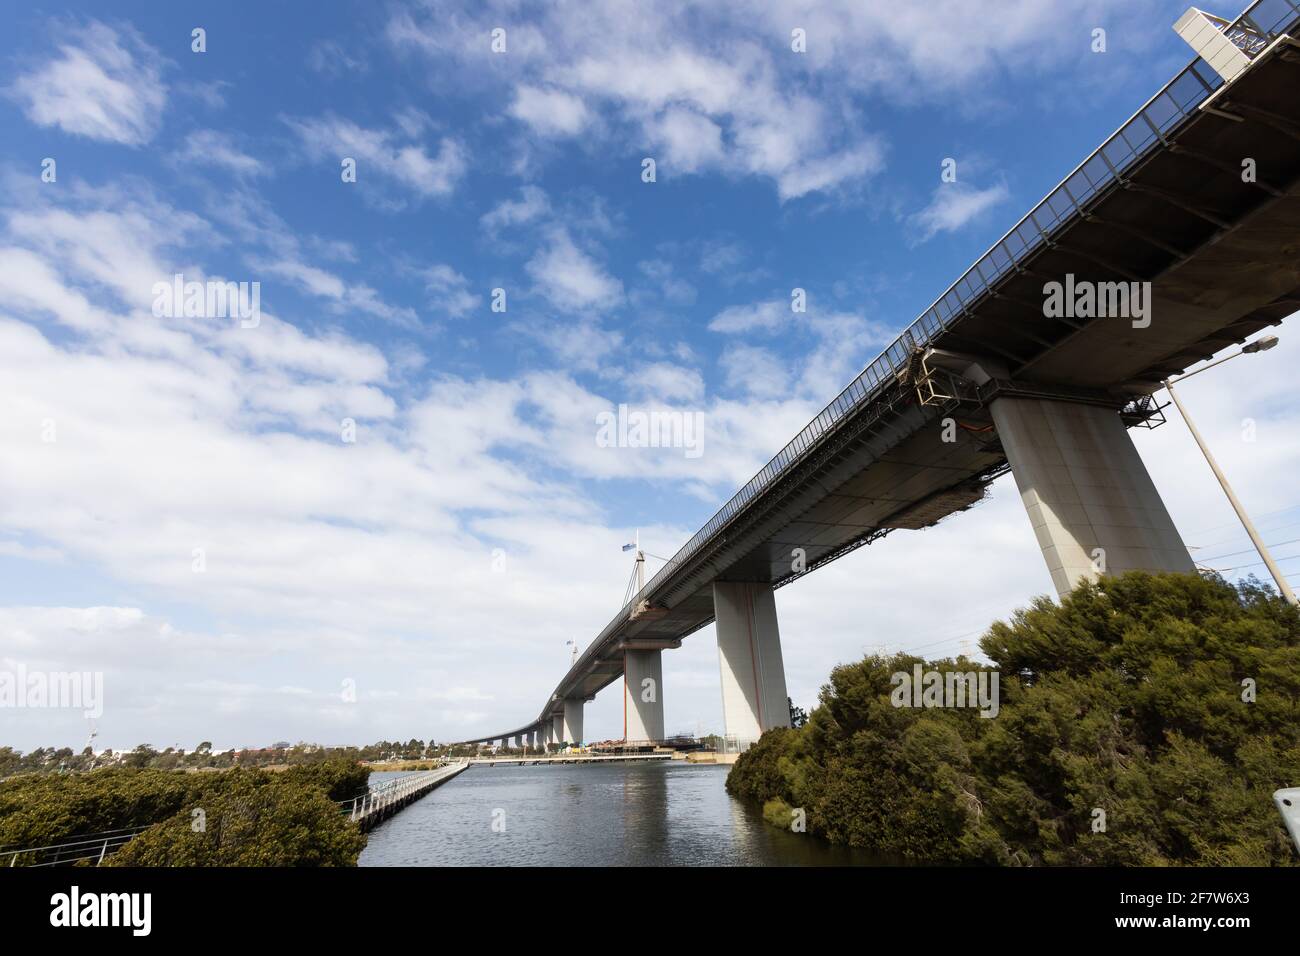 Puente Westgate en Melbourne Australia con bandera a media asta debido a la muerte del príncipe Felipe, duque de Edimburgo. Foto de stock